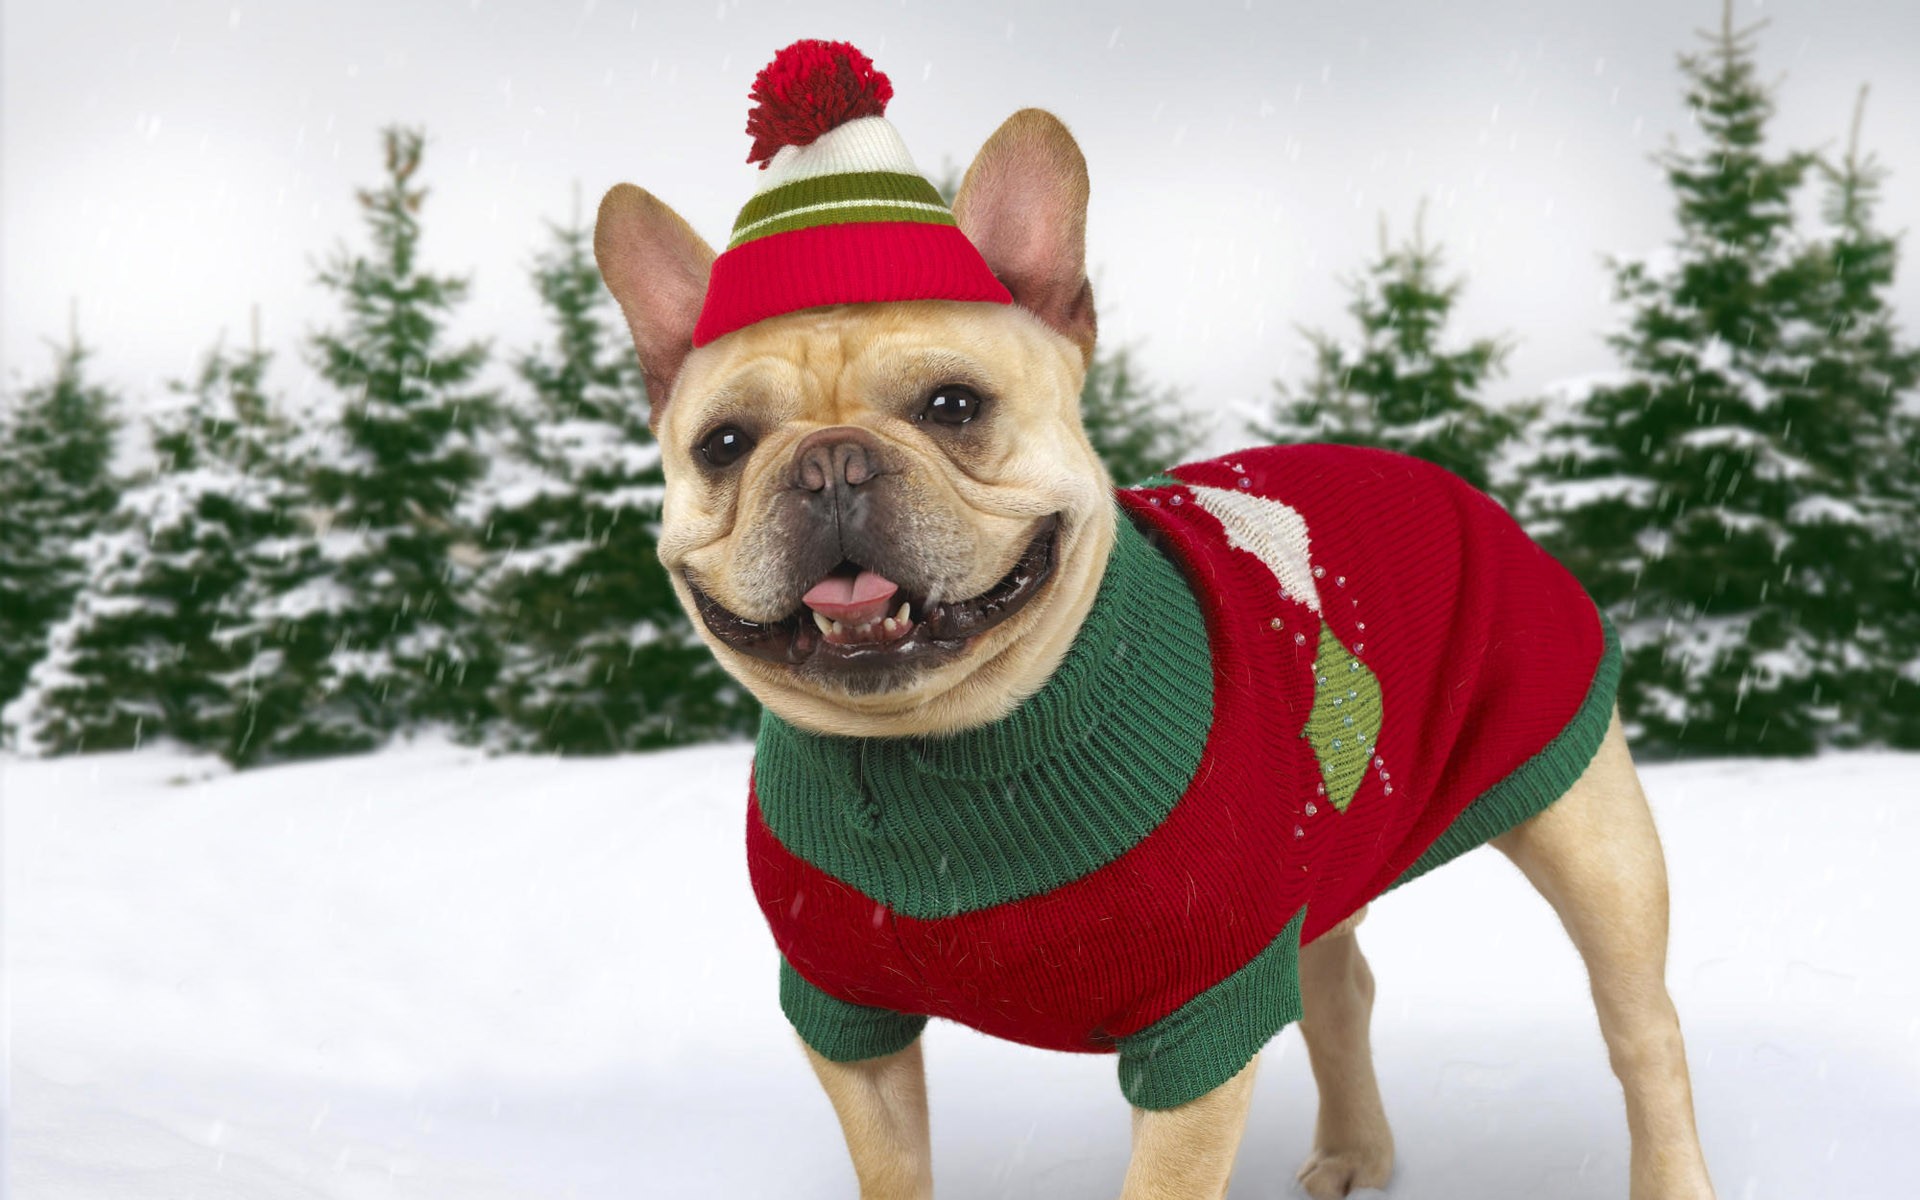 http://www.zastavki.com/pictures/originals/2013/Animals___Dogs_Dog_in_winter_clothes_051666_.jpg